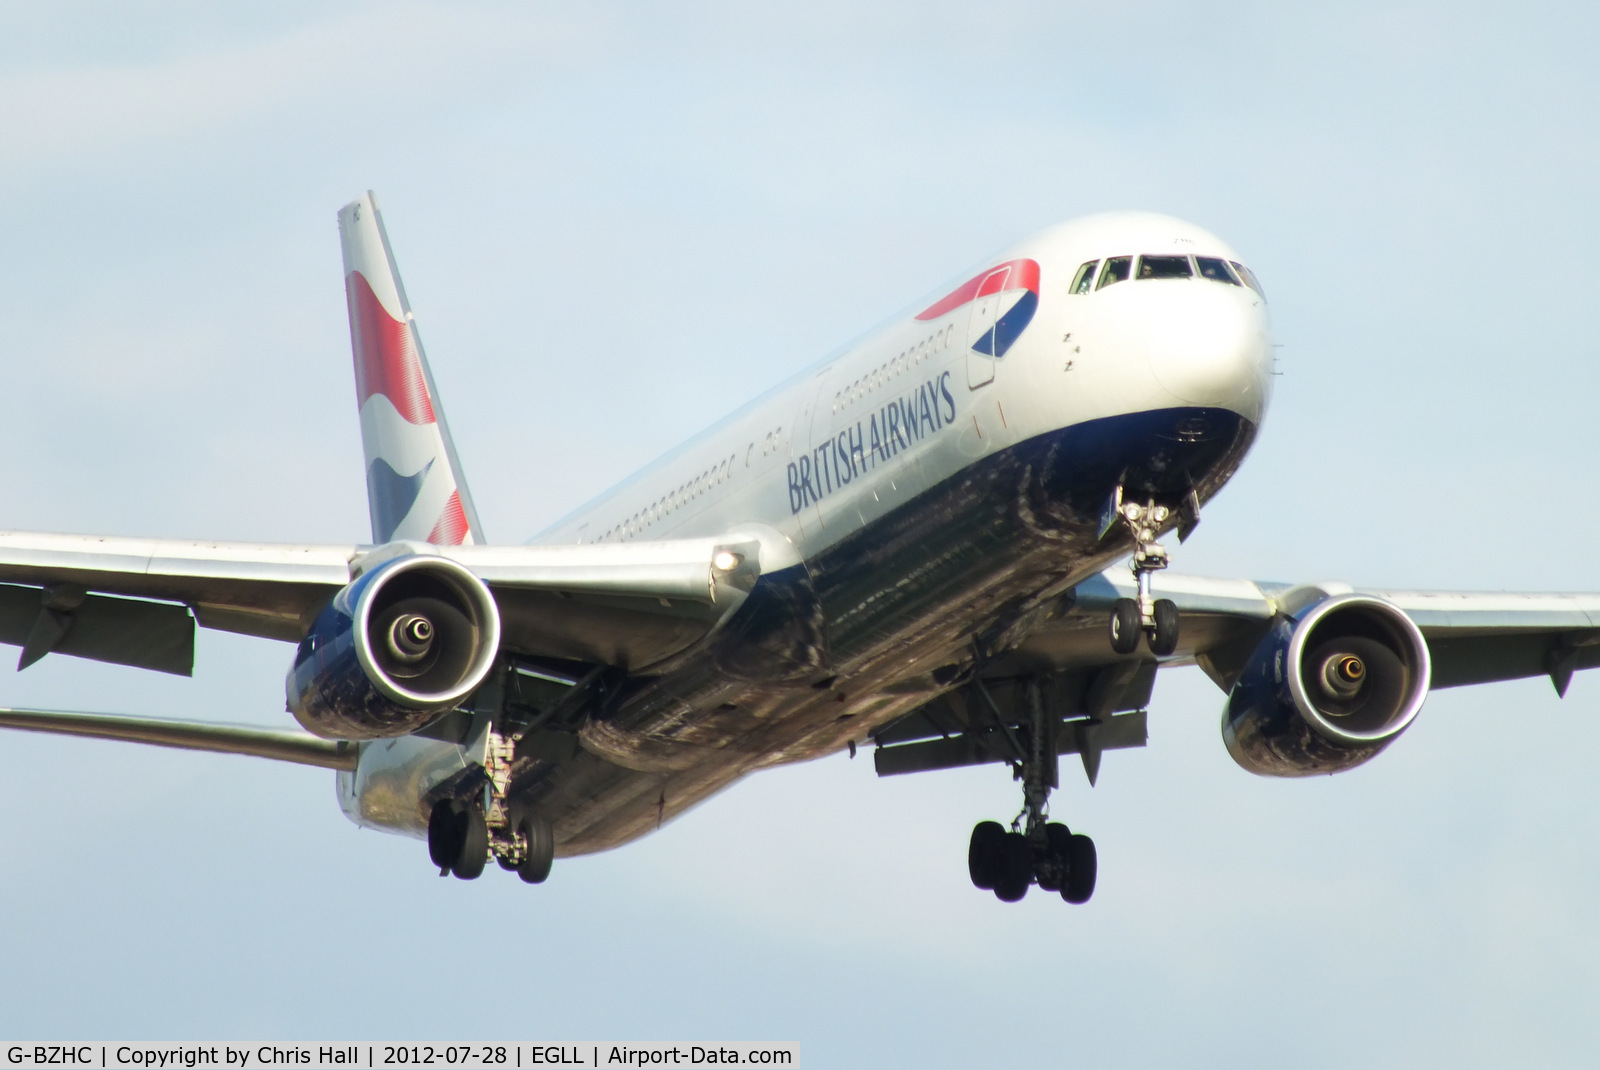 G-BZHC, 1998 Boeing 767-336 C/N 29232, British Airways